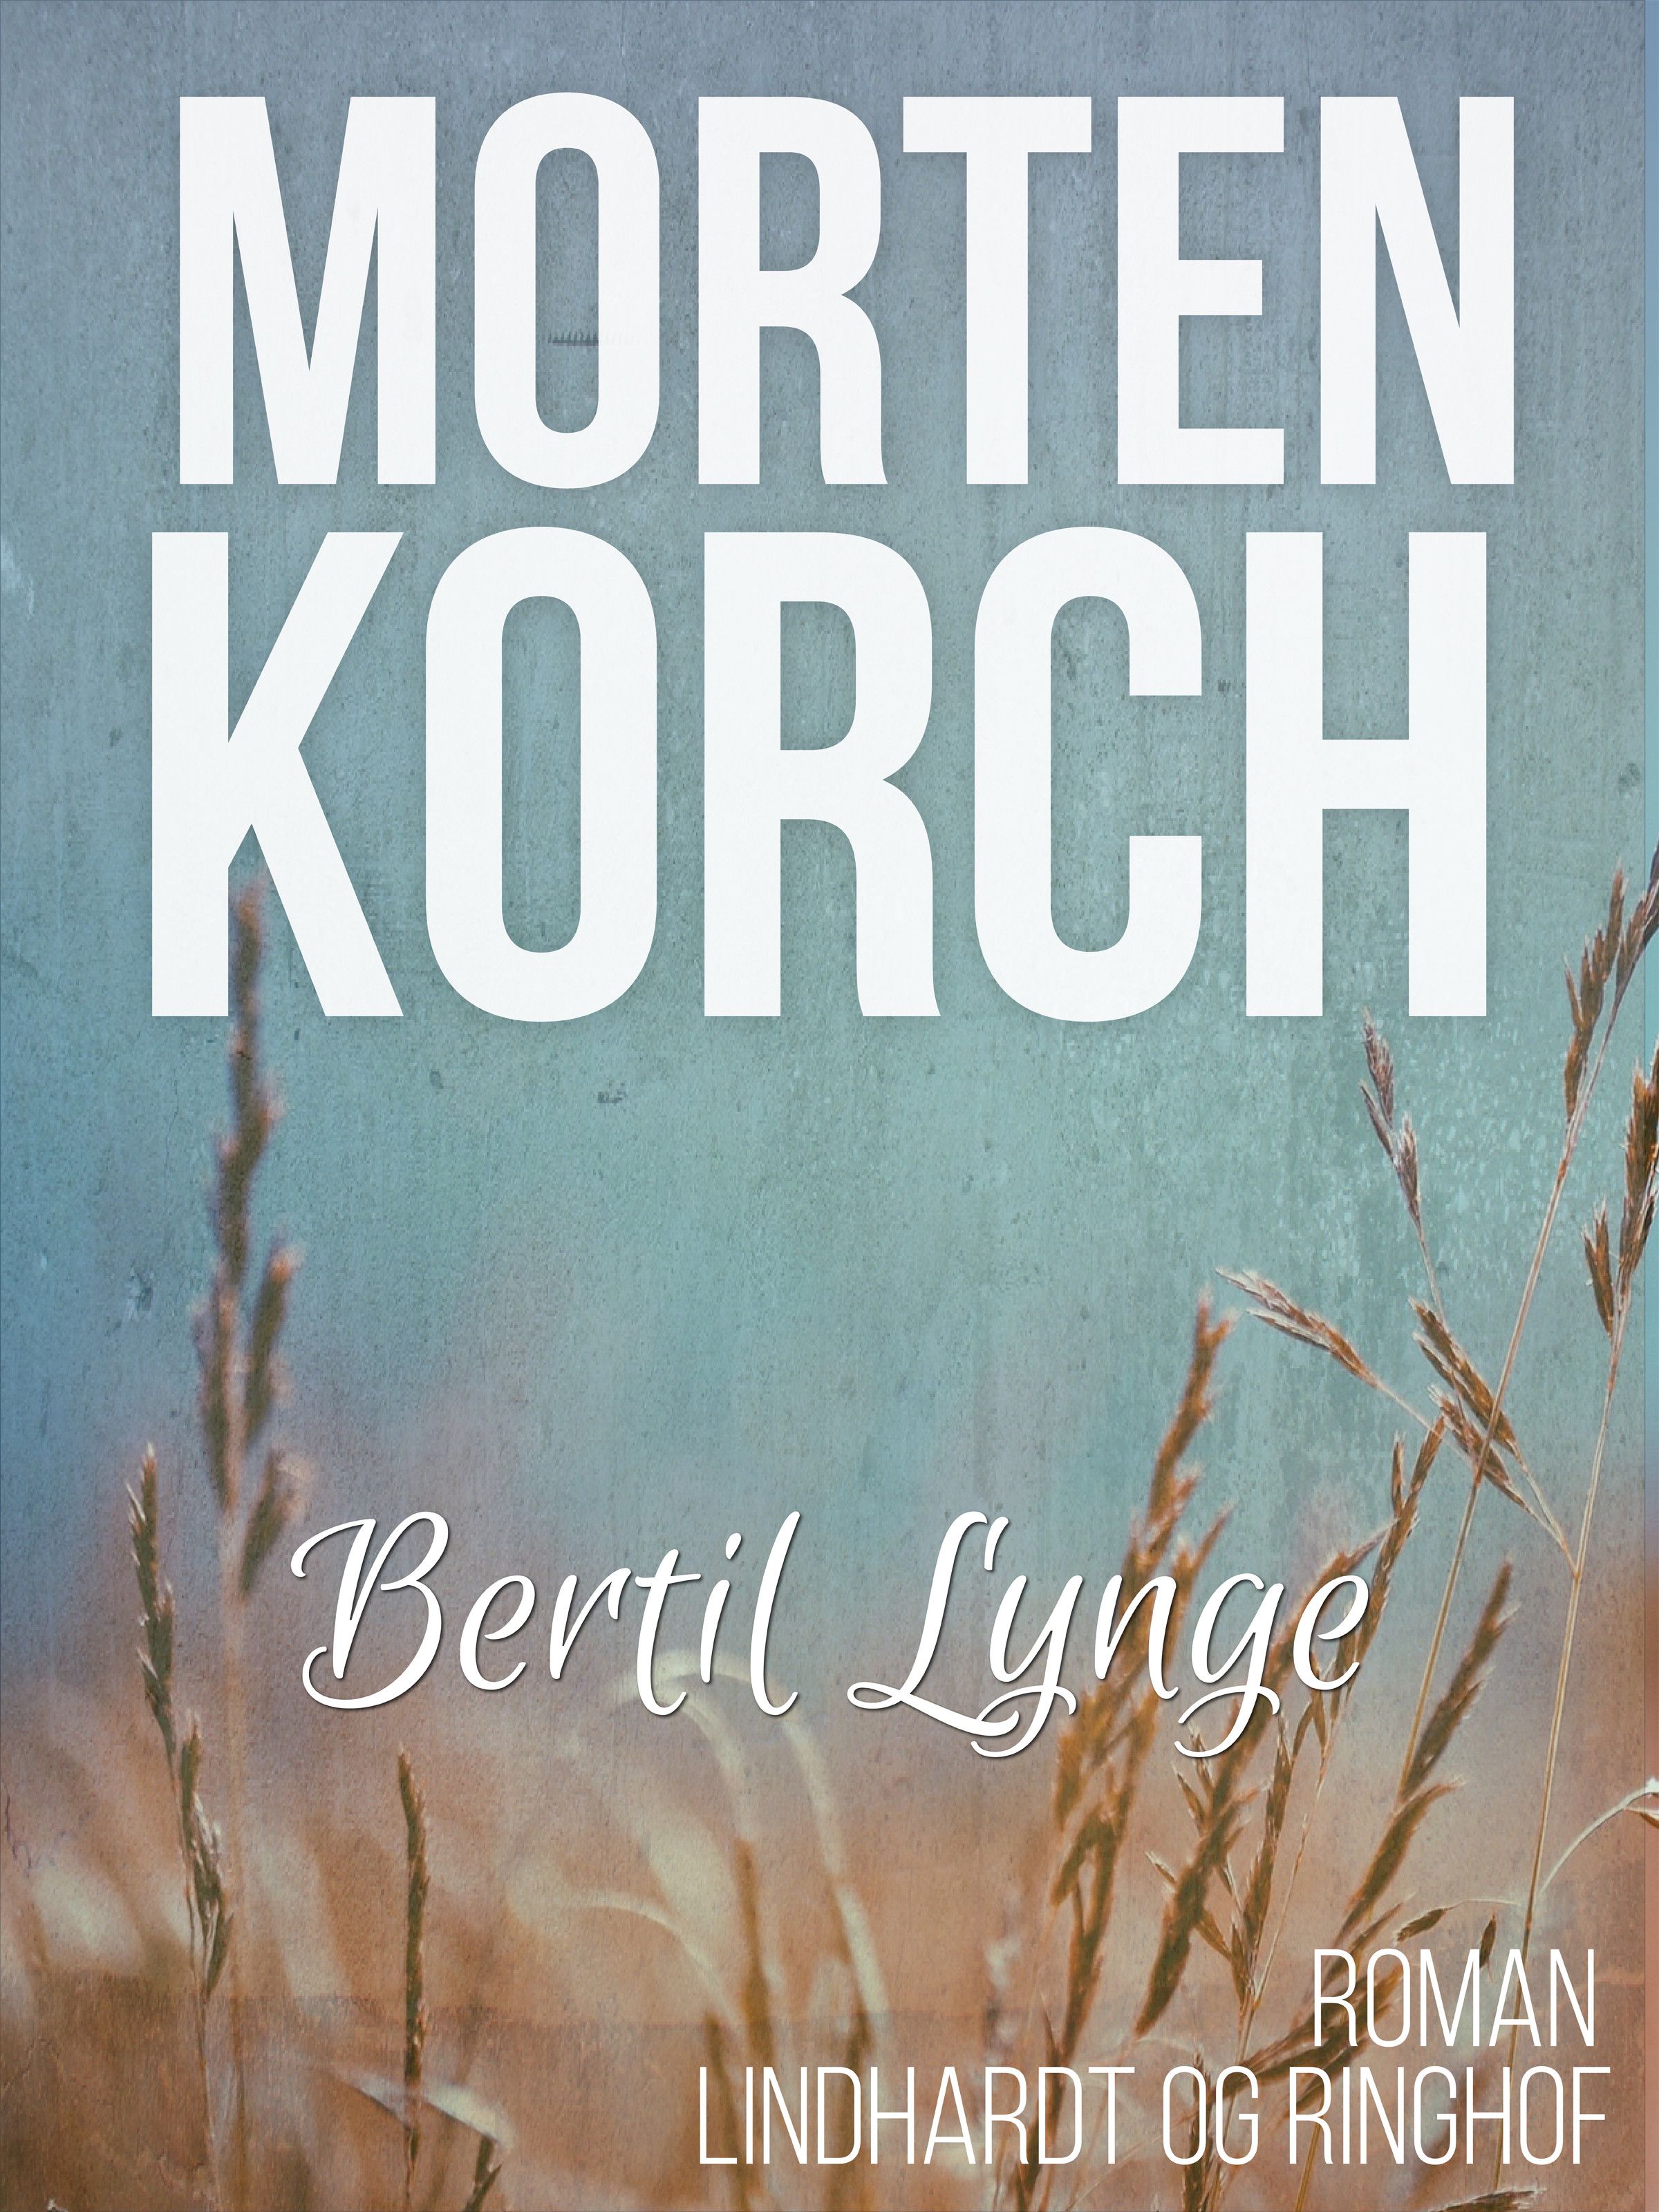 Bertil Lynge, ljudbok av Morten Korch